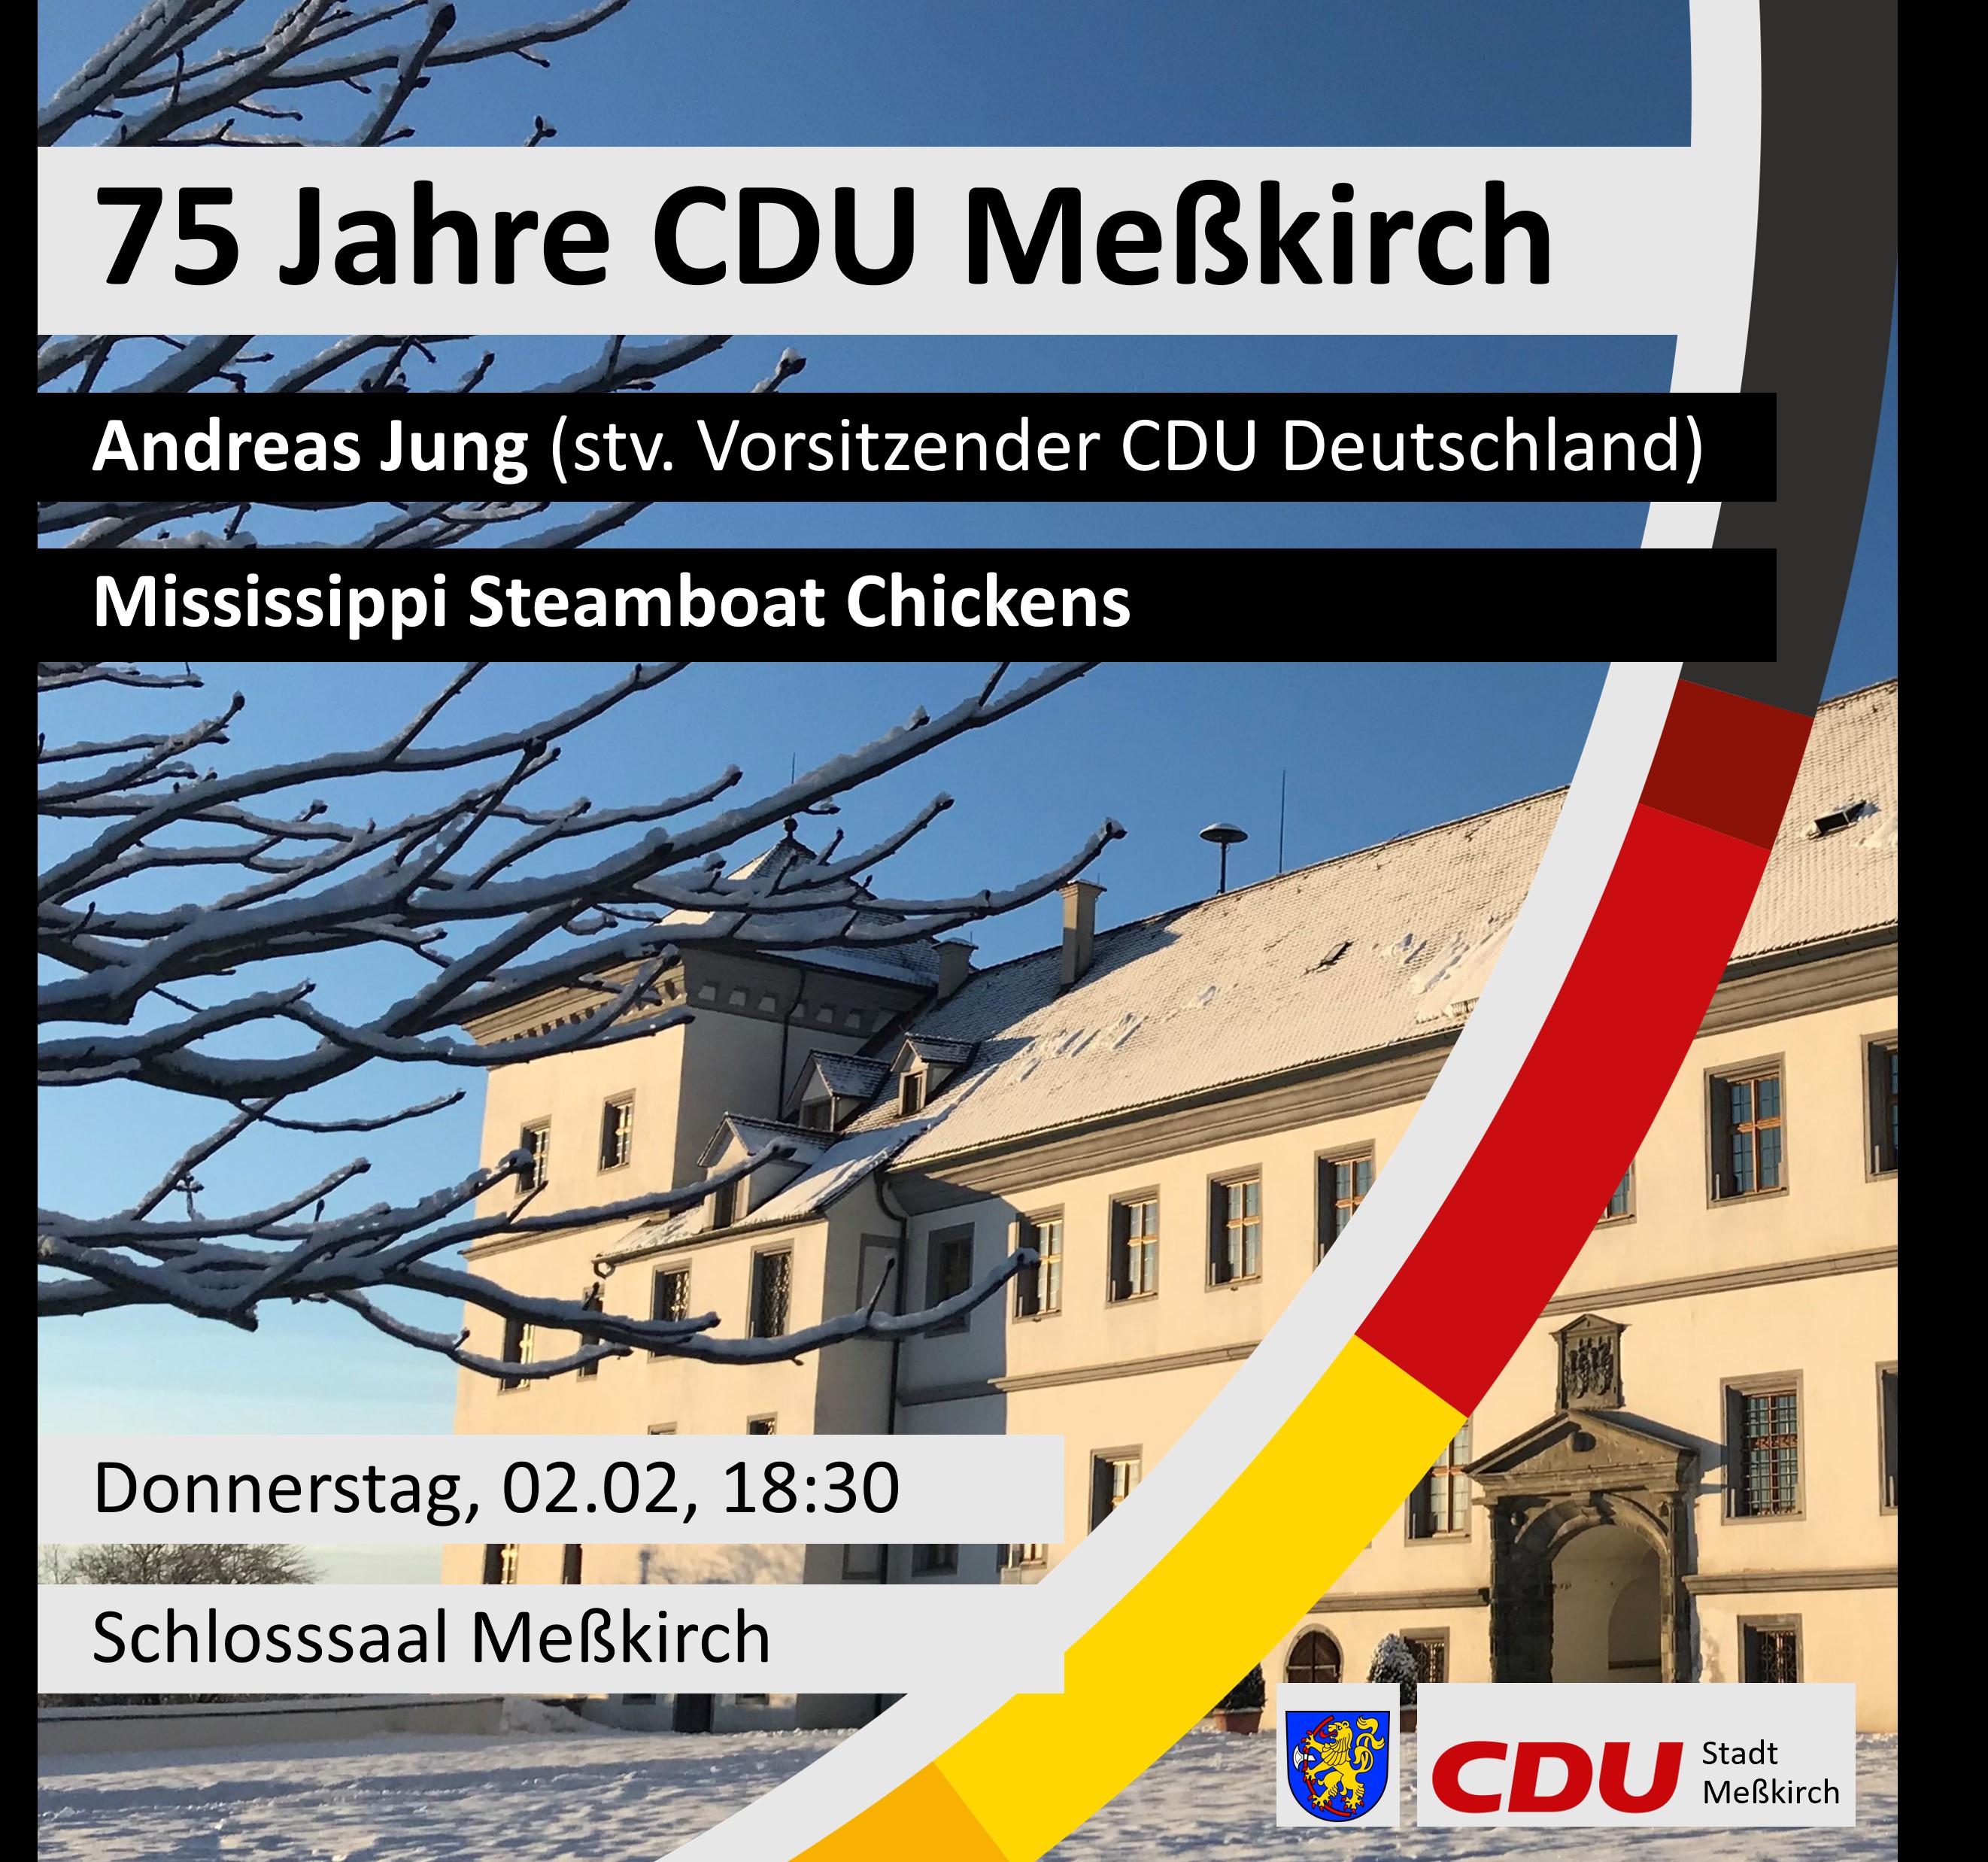 Bild: CDU Messkirch